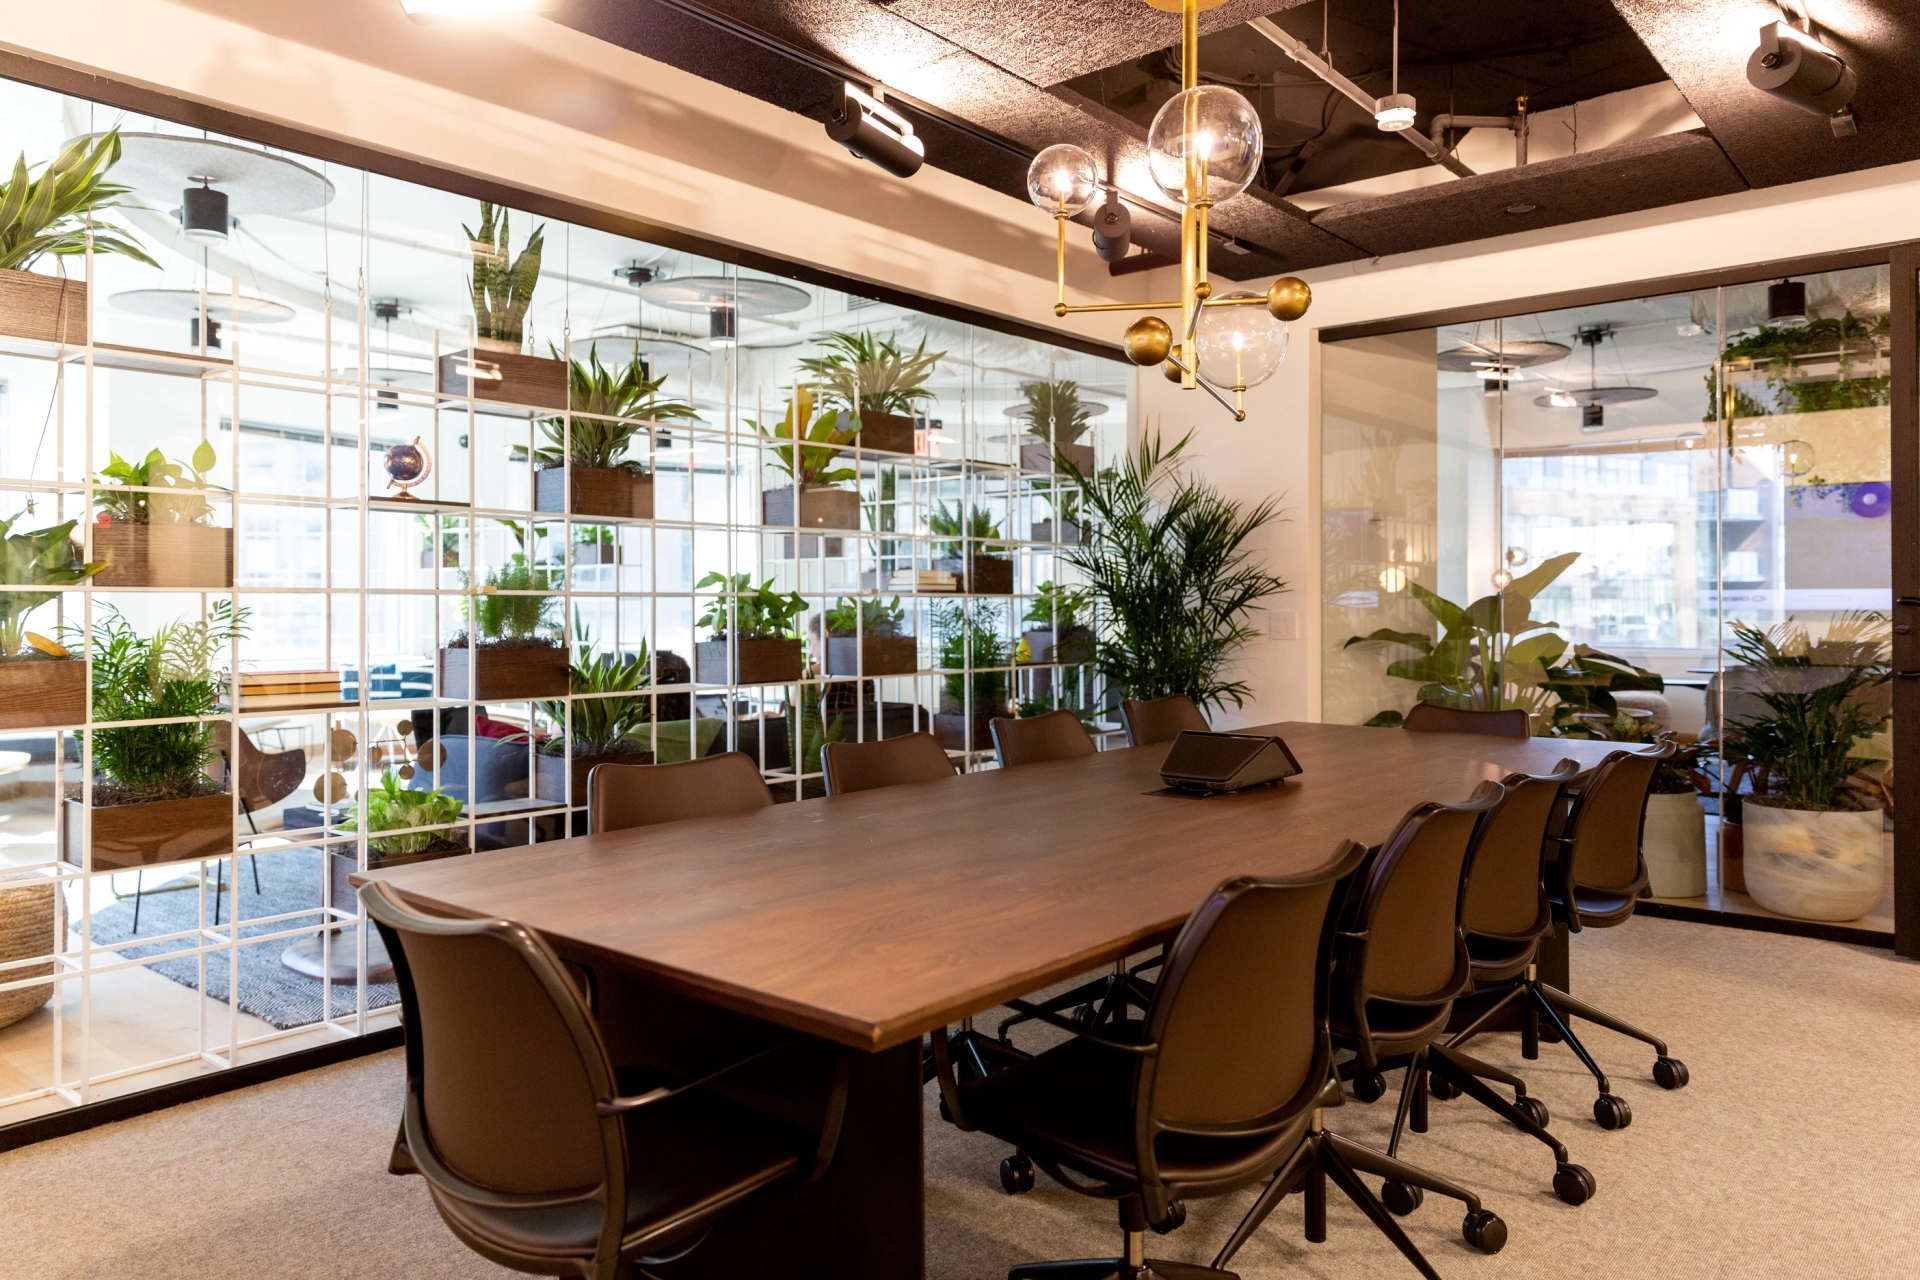 Une salle de réunion de coworking avec un mur de verre et des plantes luxuriantes.